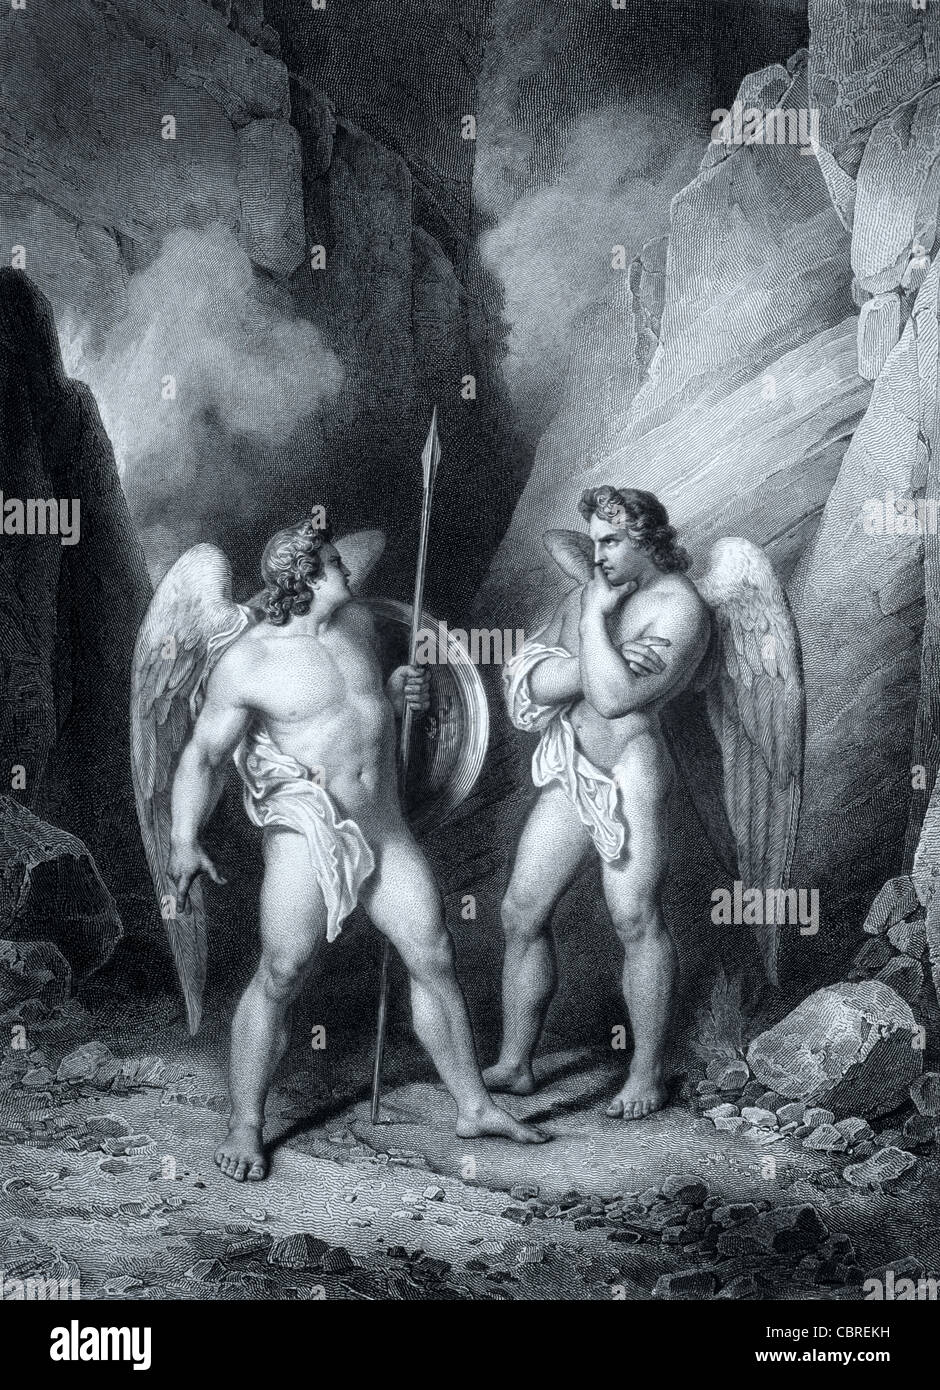 Il Diavolo o Satana & Beelzebub o Beelzebul " il principe dei demoni". John Milton il paradiso perduto. c xix secolo incisione di Gustave Doré Foto Stock